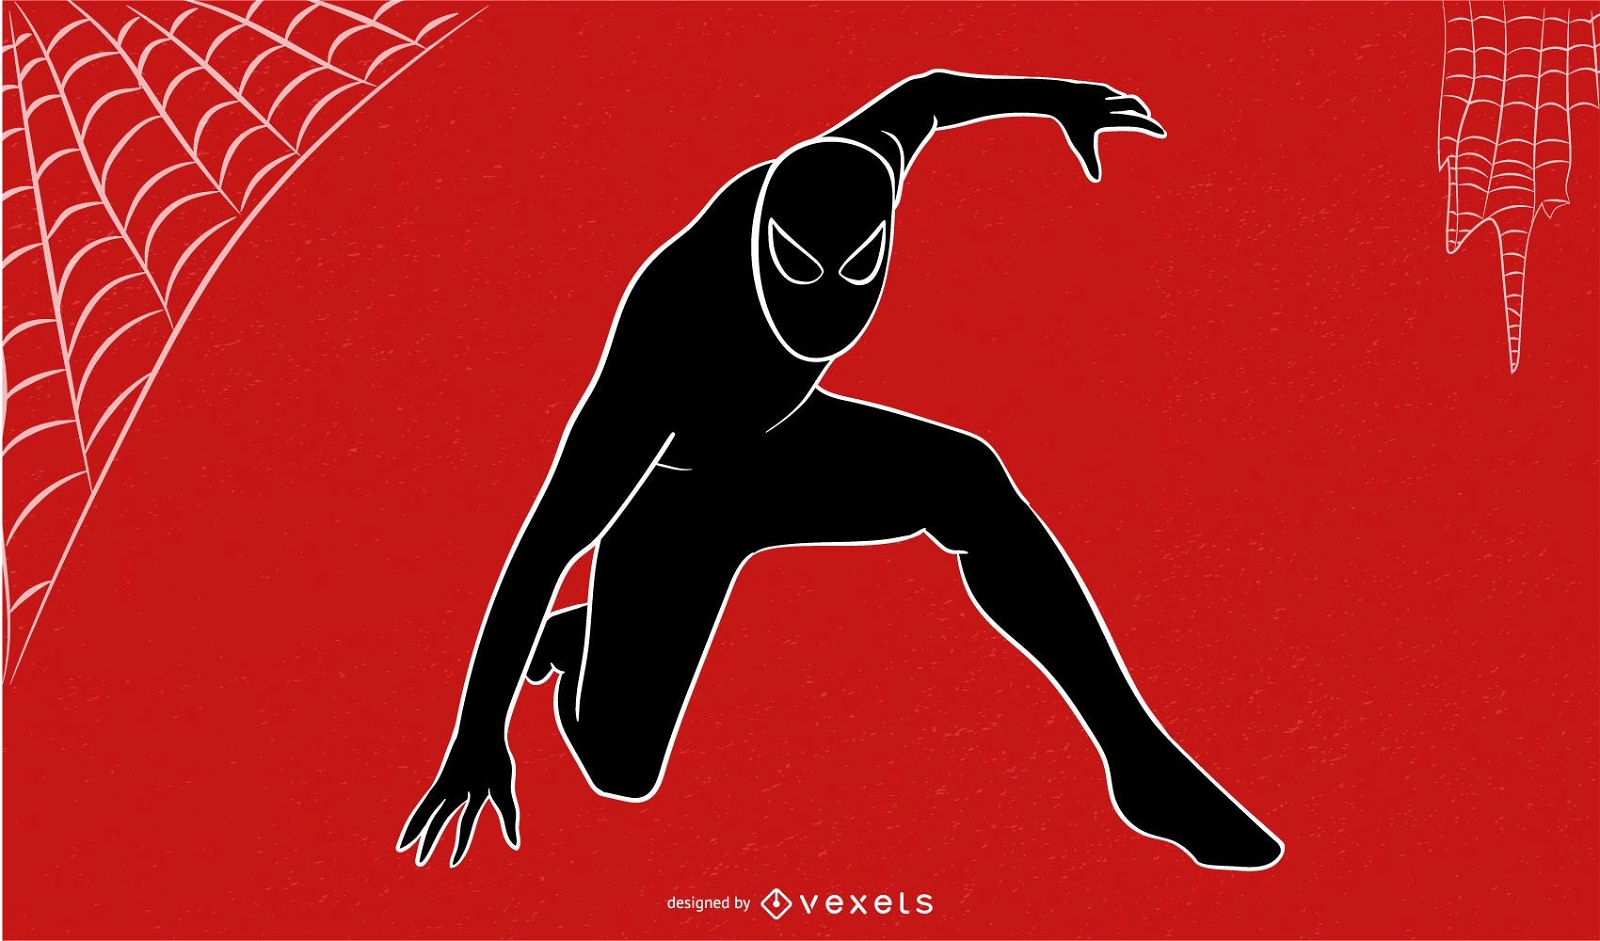 Abstrakte Spider-Man-Skizze